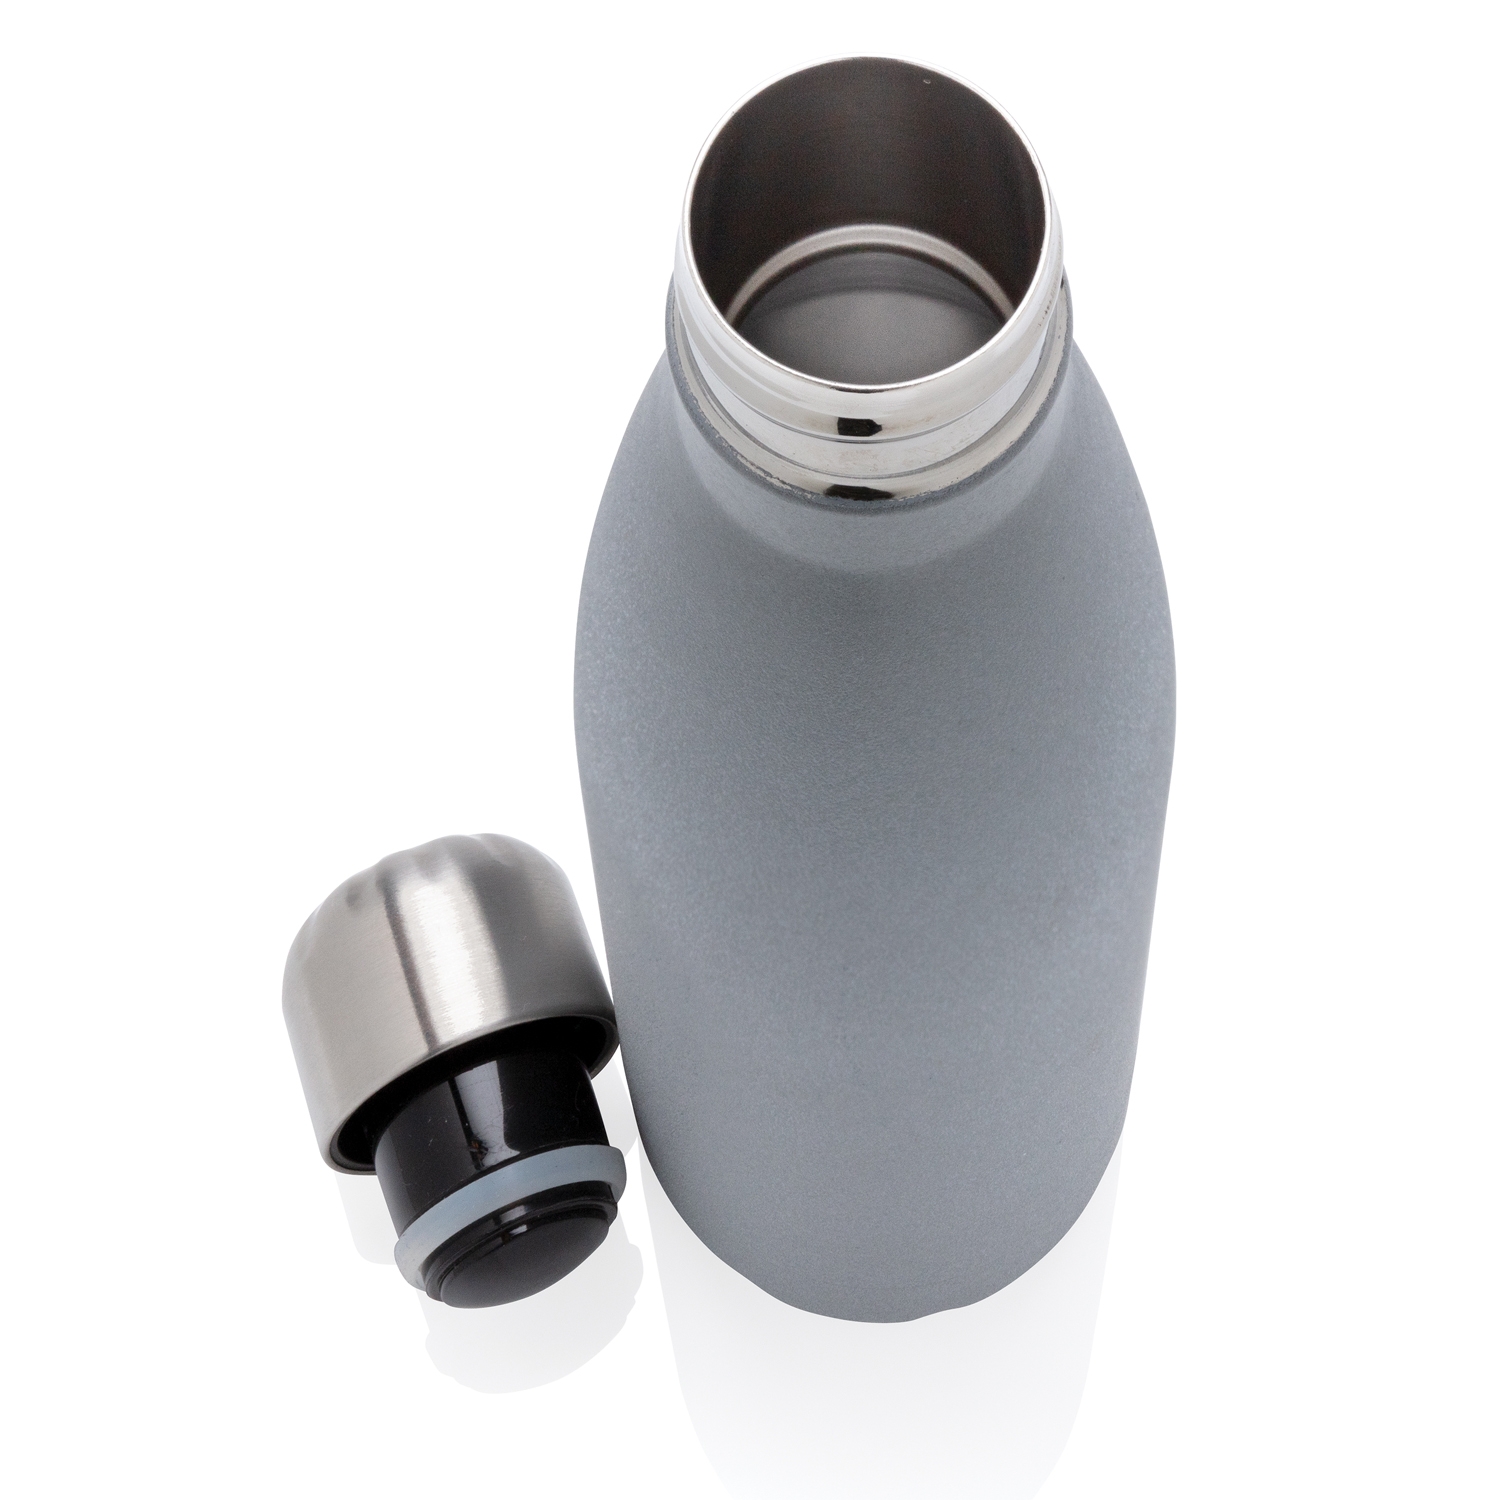 Вакуумная бутылка со светоотражающим покрытием, серый, нержавеющая сталь; pp